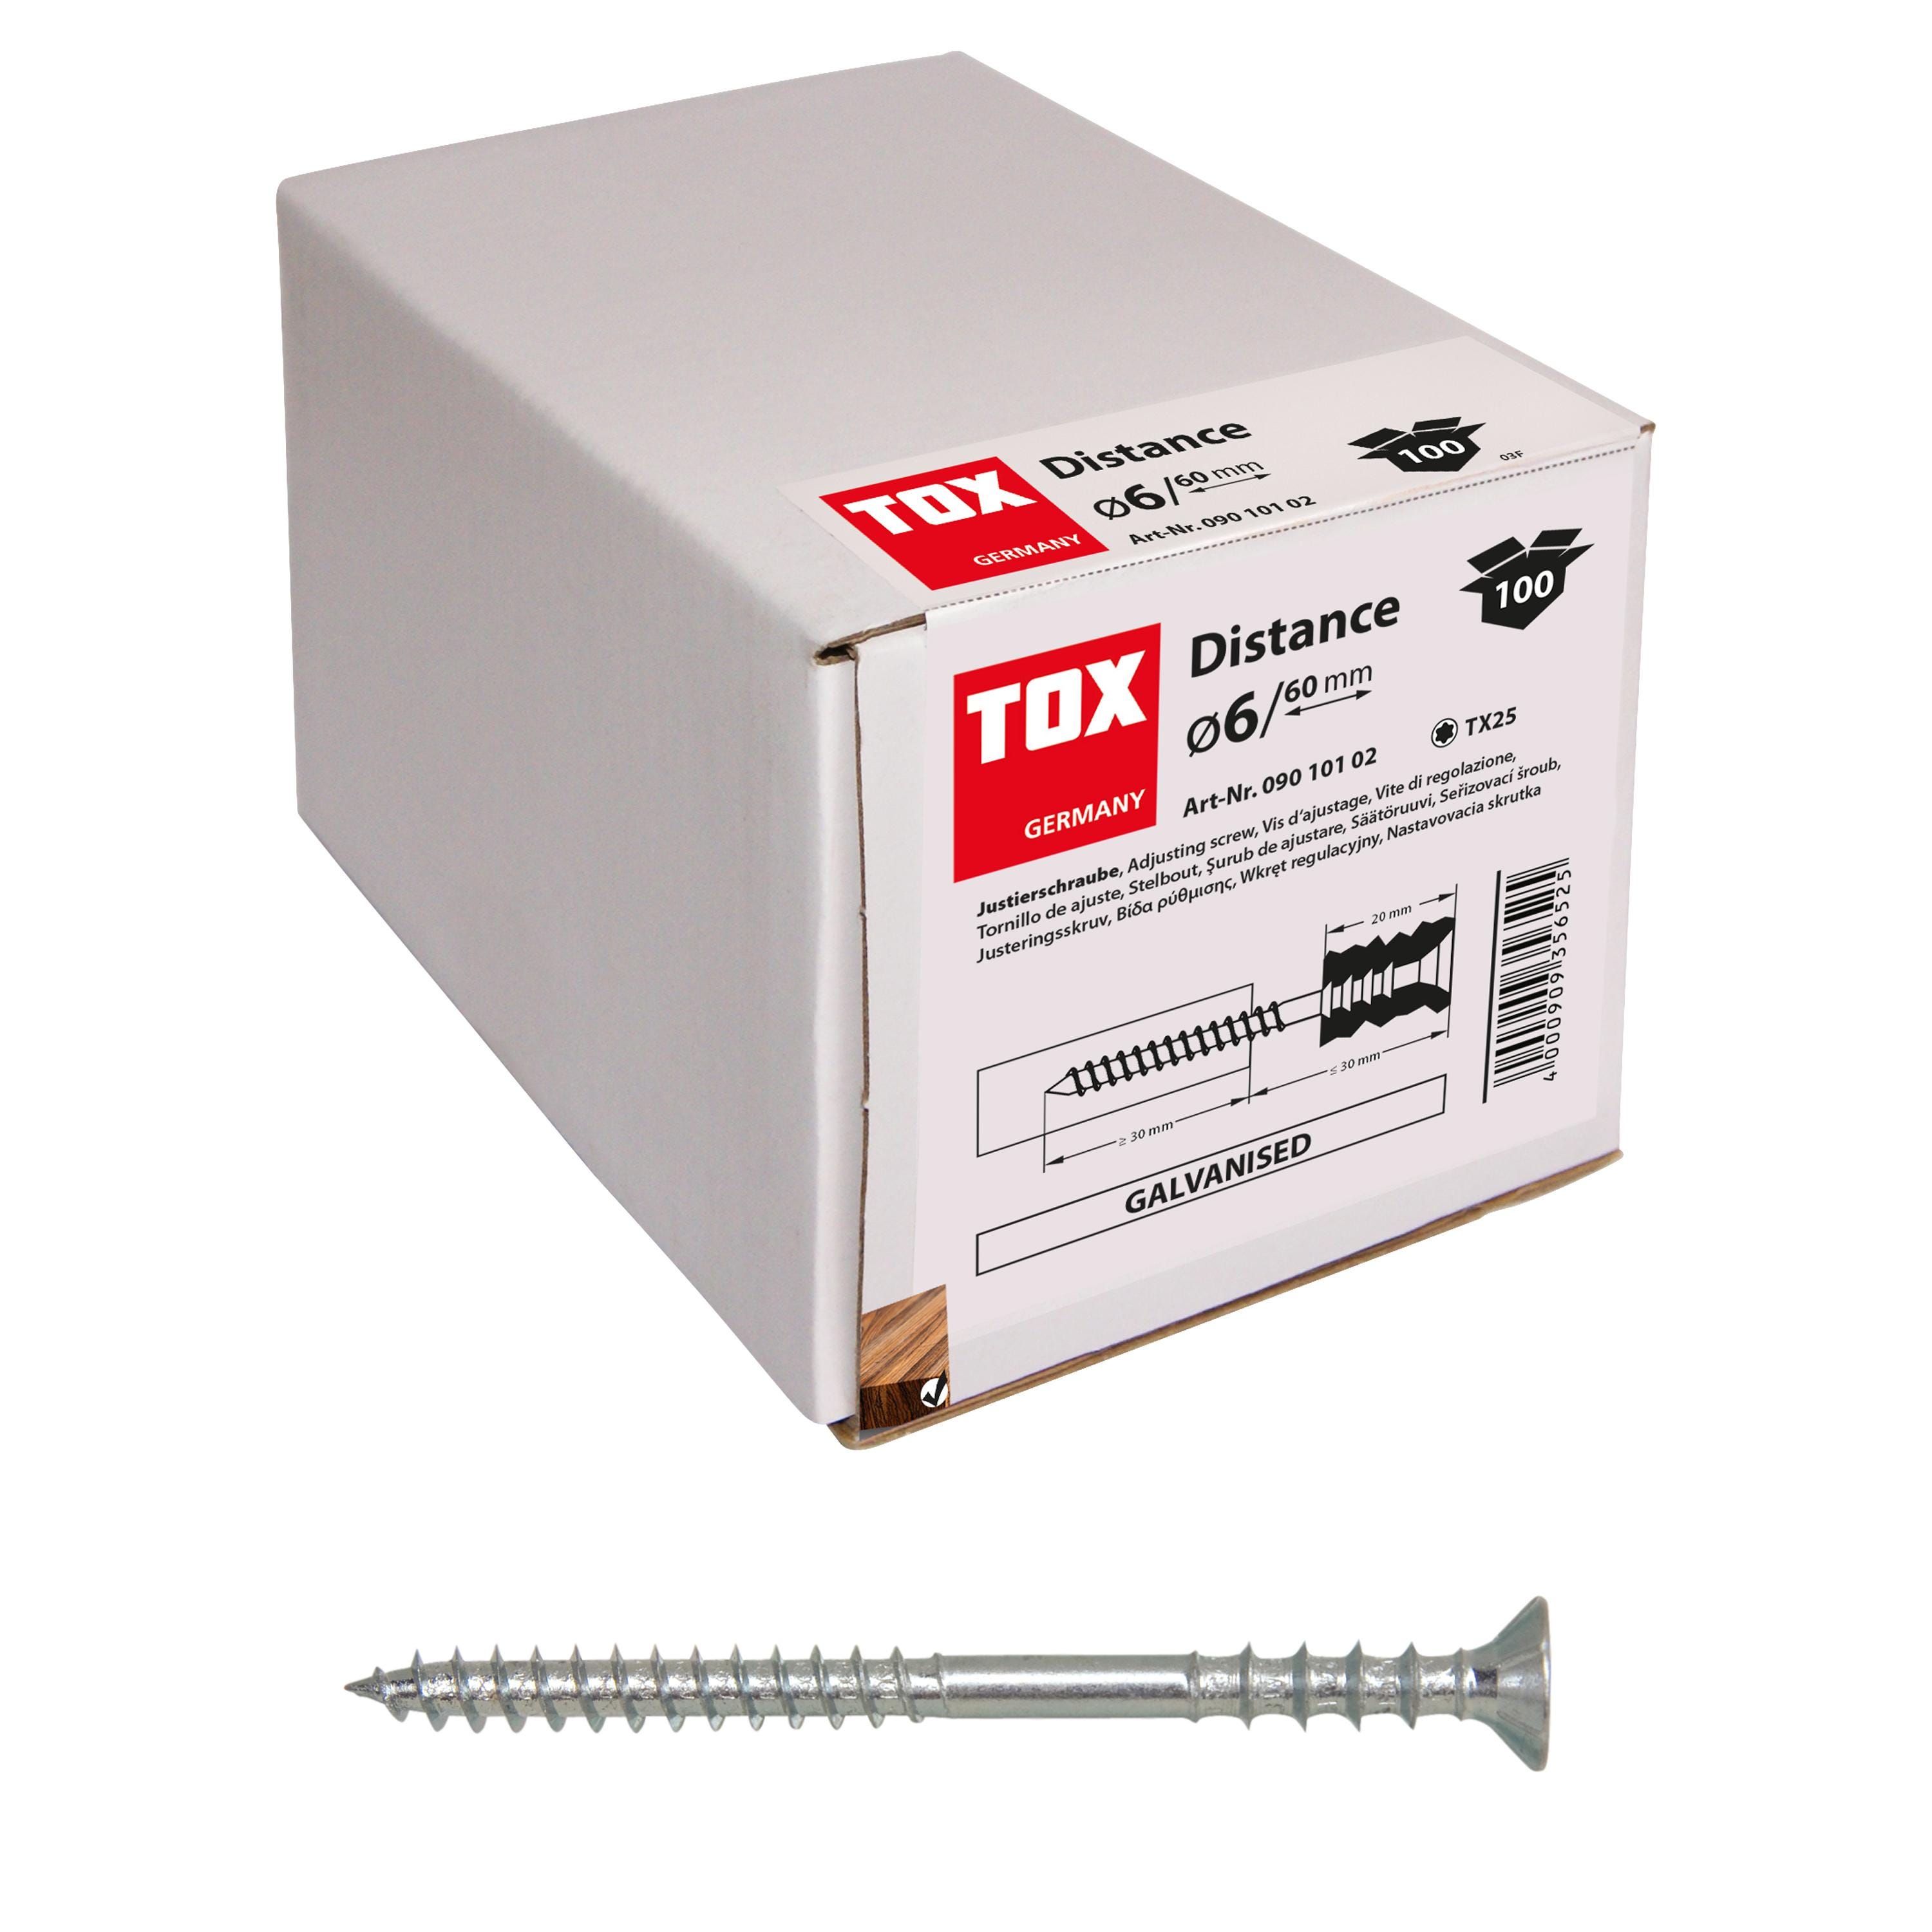 Caja de 100 tornillos distanciadores JS-S Distance (6/100) Tox 09010106